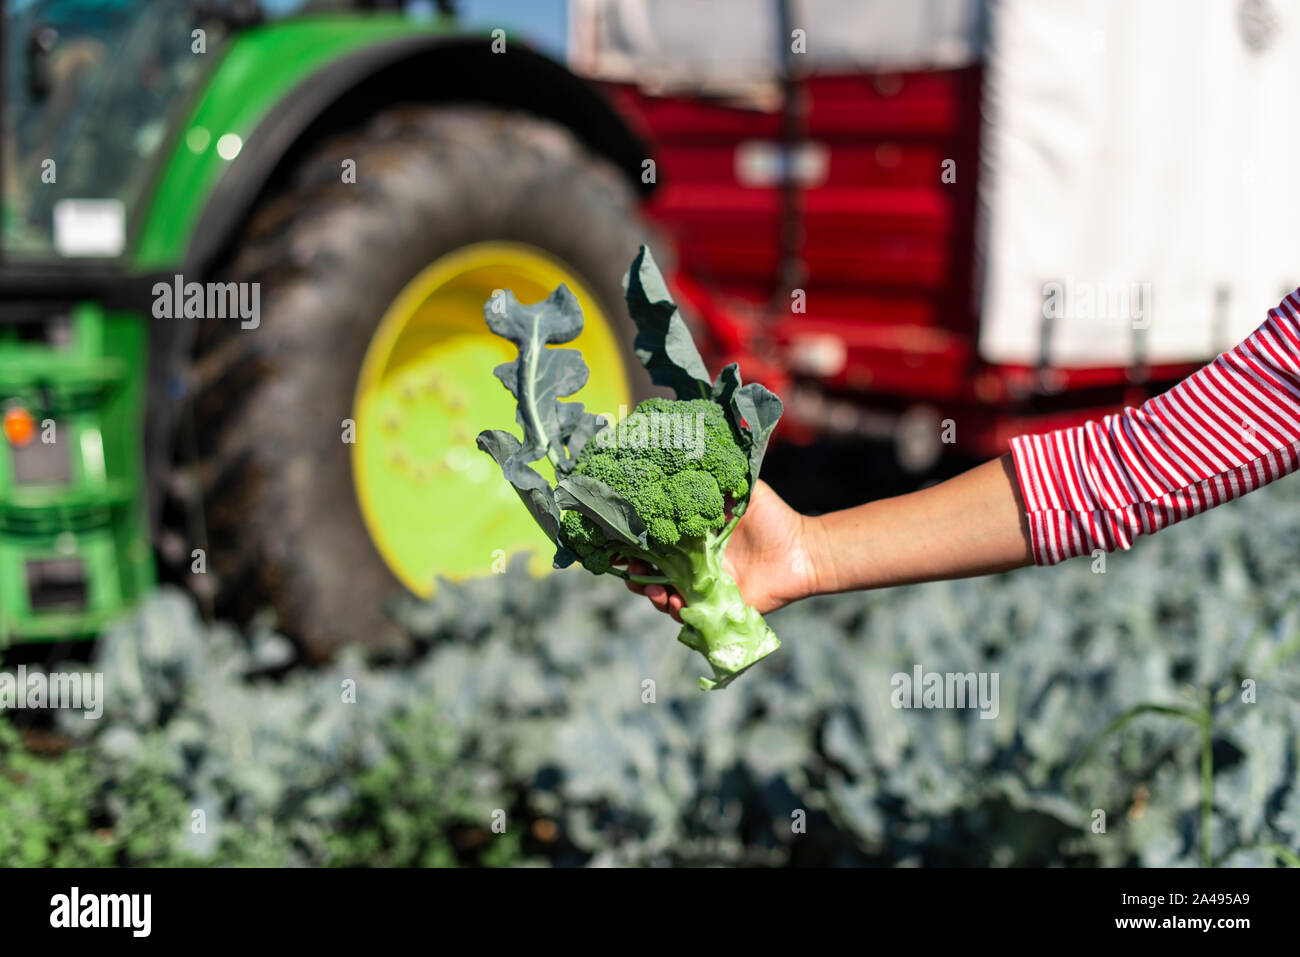 Arbeitnehmer zeigt Brokkoli auf der Plantage. Kommissionierung Brokkoli. Traktor und automatisierte Plattform in Brokkoli großer Garten. Sonnigen Tag. Frau, die Brokkoli Kopf. Stockfoto